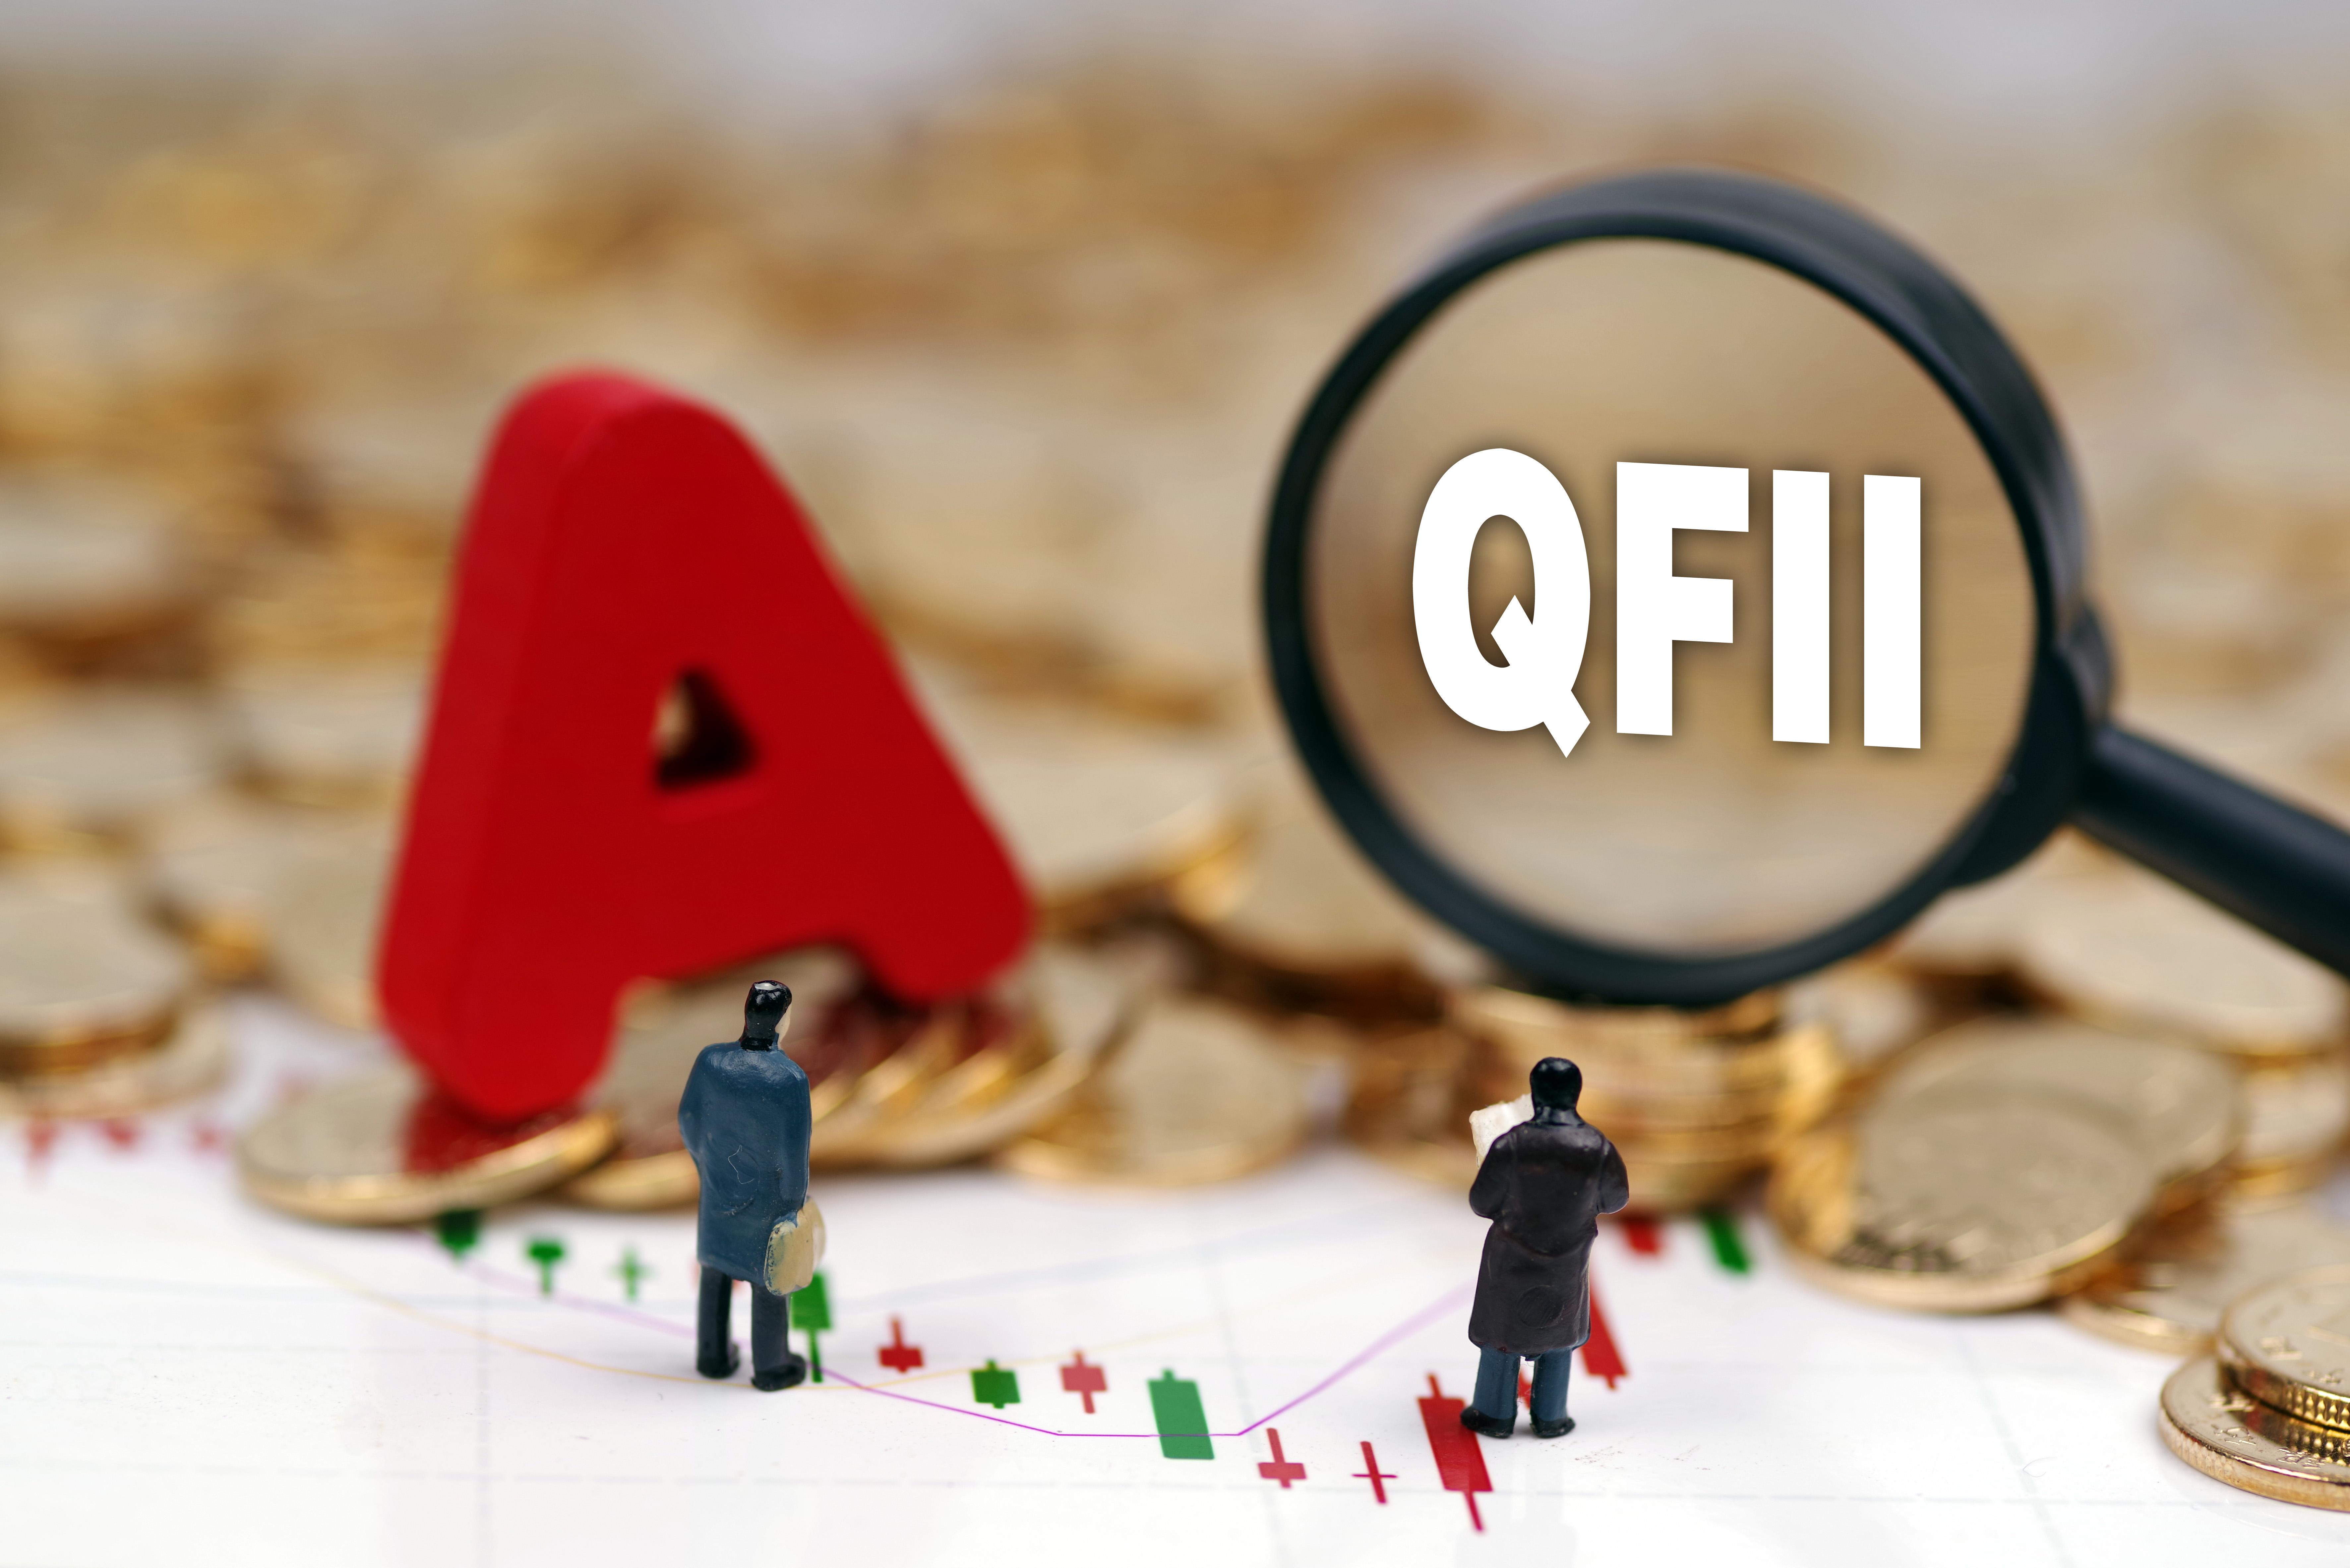 分析QFII投资行为与基金公司投资行为异同插图